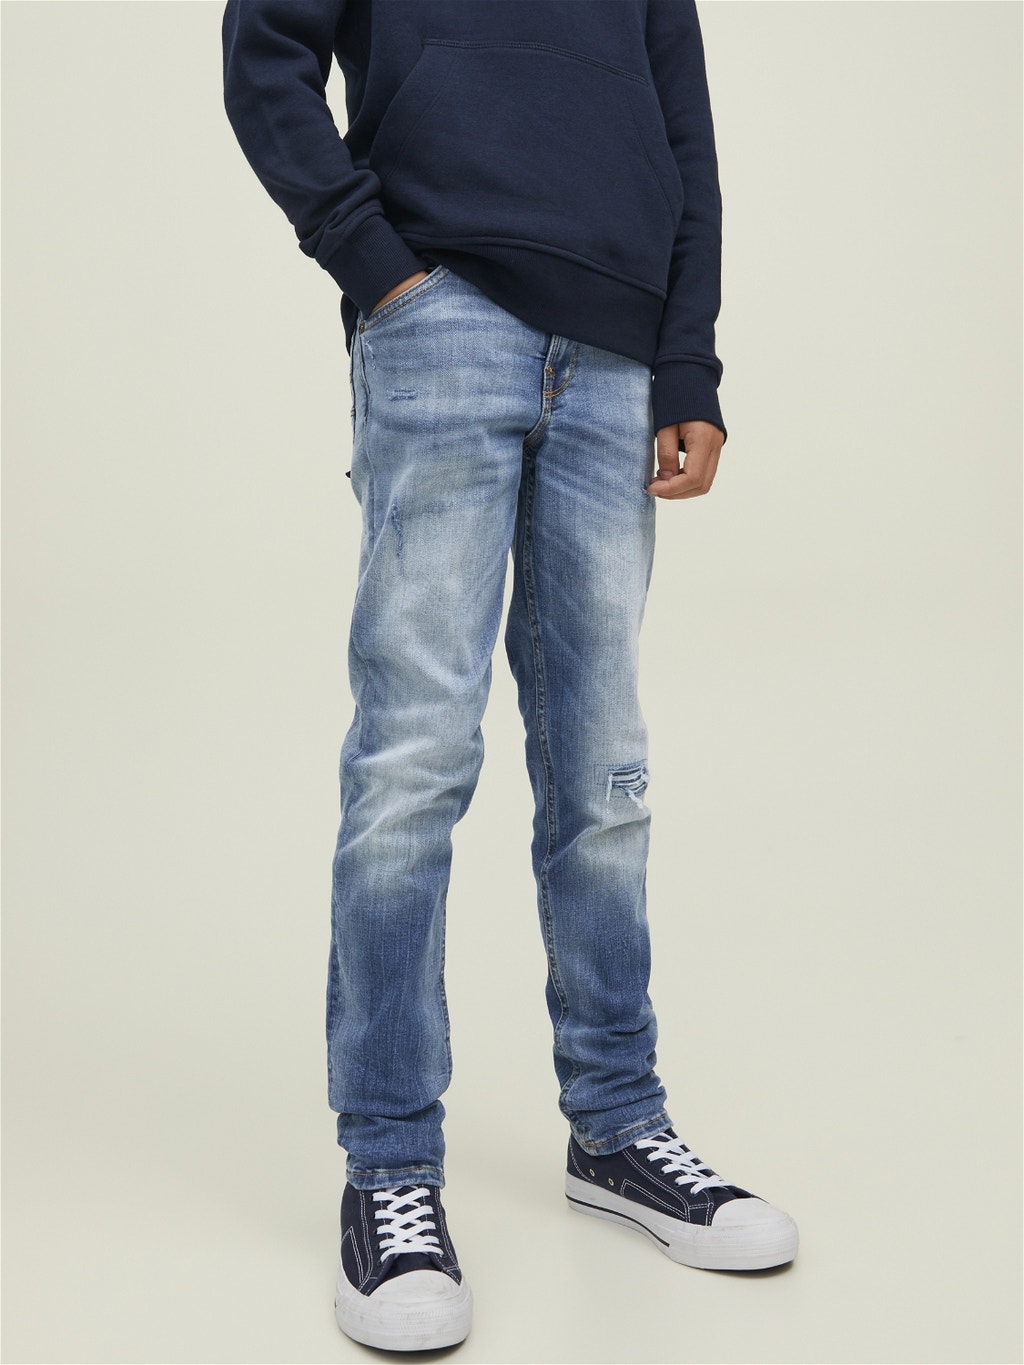 gevolgtrekking Avonturier Ontkennen Jongens Glenn Fox GE 062 Slim fit jeans | Medium Blue | Jack & Jones®